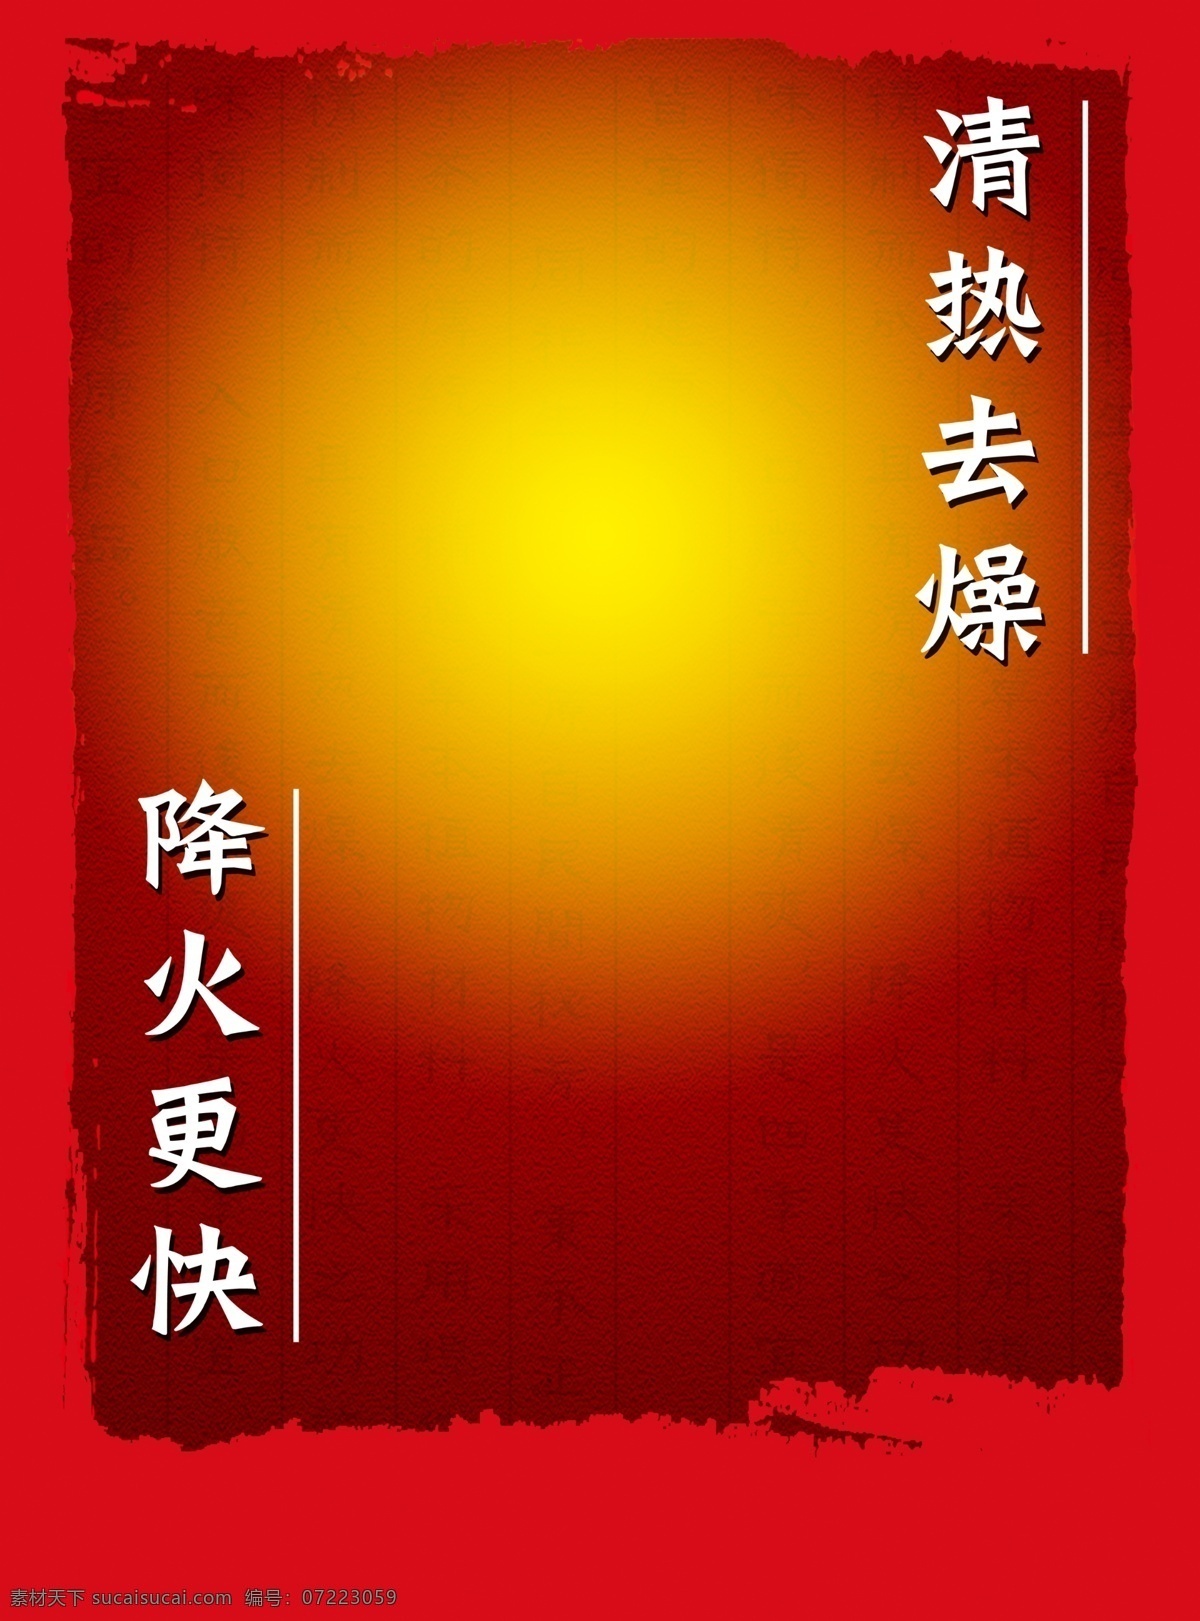 凉茶 饮品 夏日 宣传单 海报 广告 背景 红色 广告背景